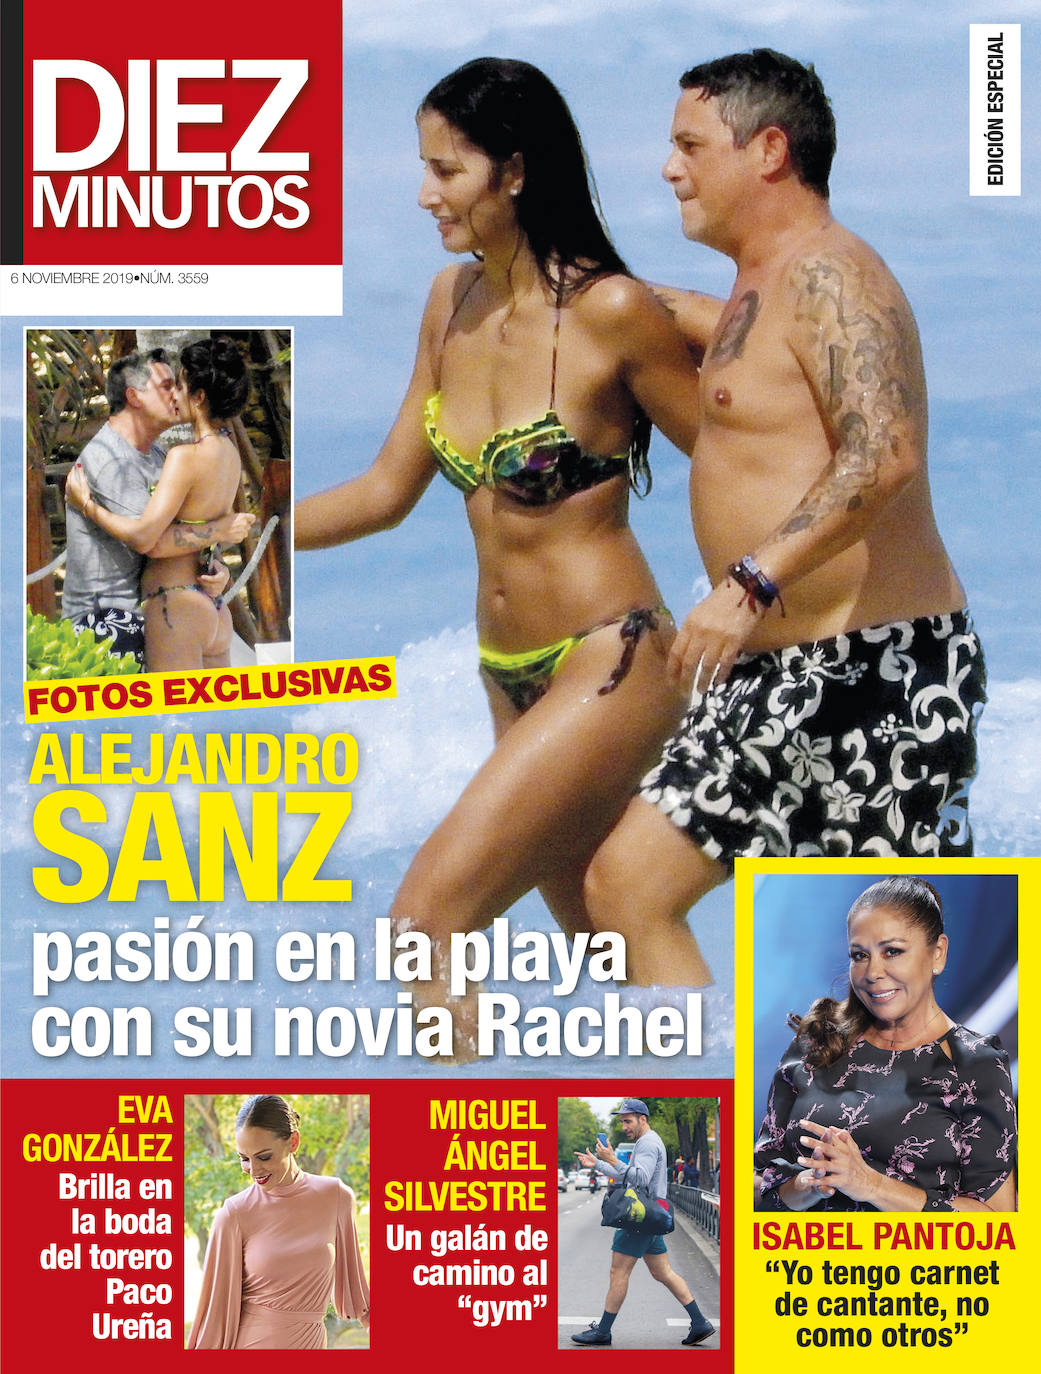 Alejandro Sanz y su novia Rachel viven su pasión en la playa El Comercio Diario de Asturias